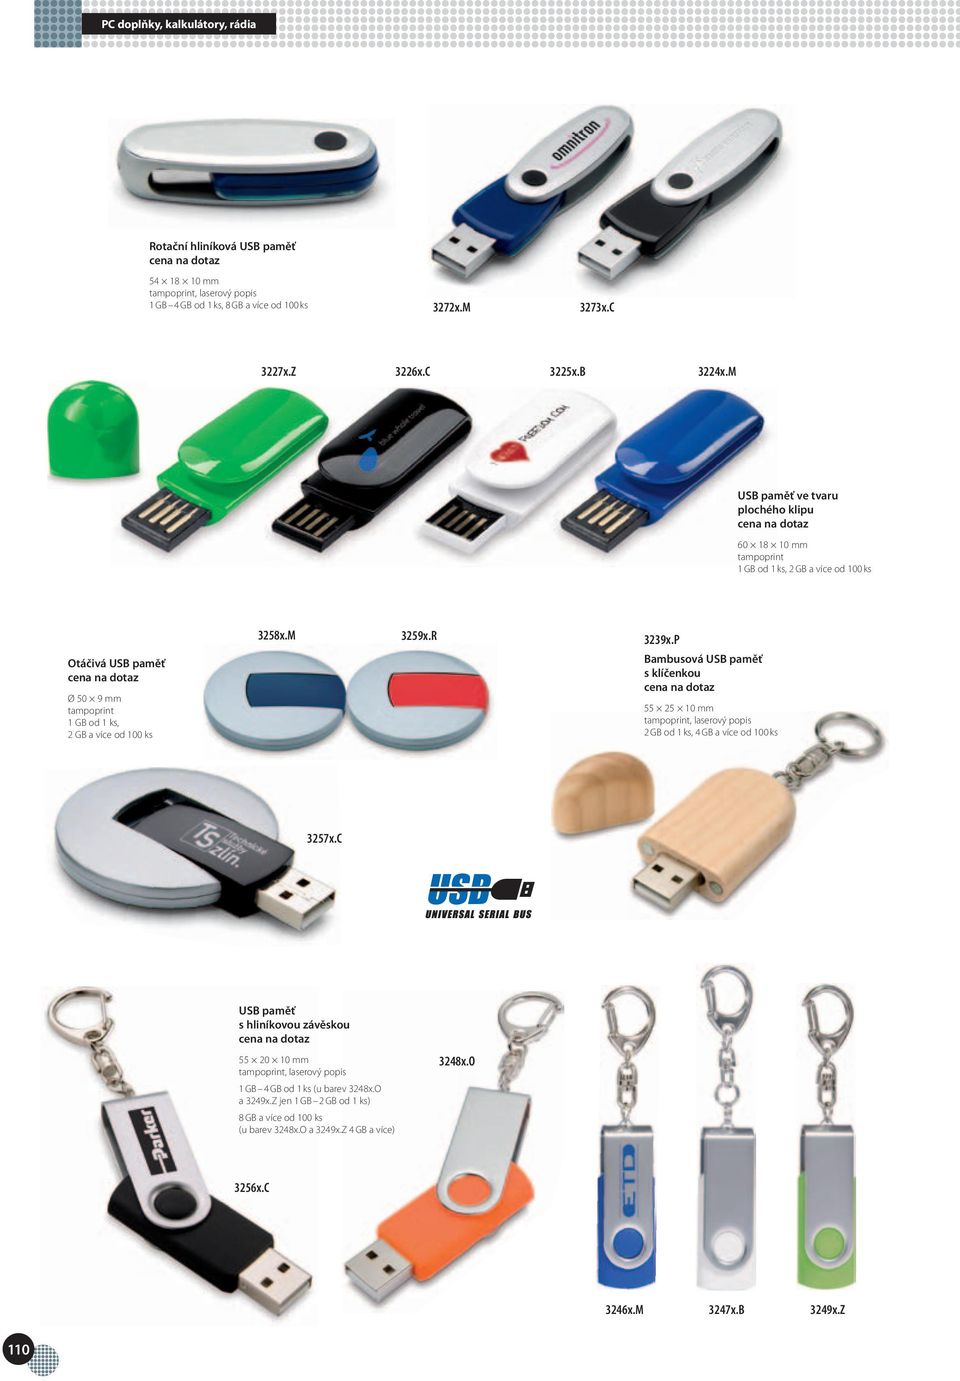 R 3239x.P Bambusová USB paměť s klíčenkou 55 25 10 mm, laserový popis 2 GB od 1 ks, 4 GB a více od 100 ks 3257x.